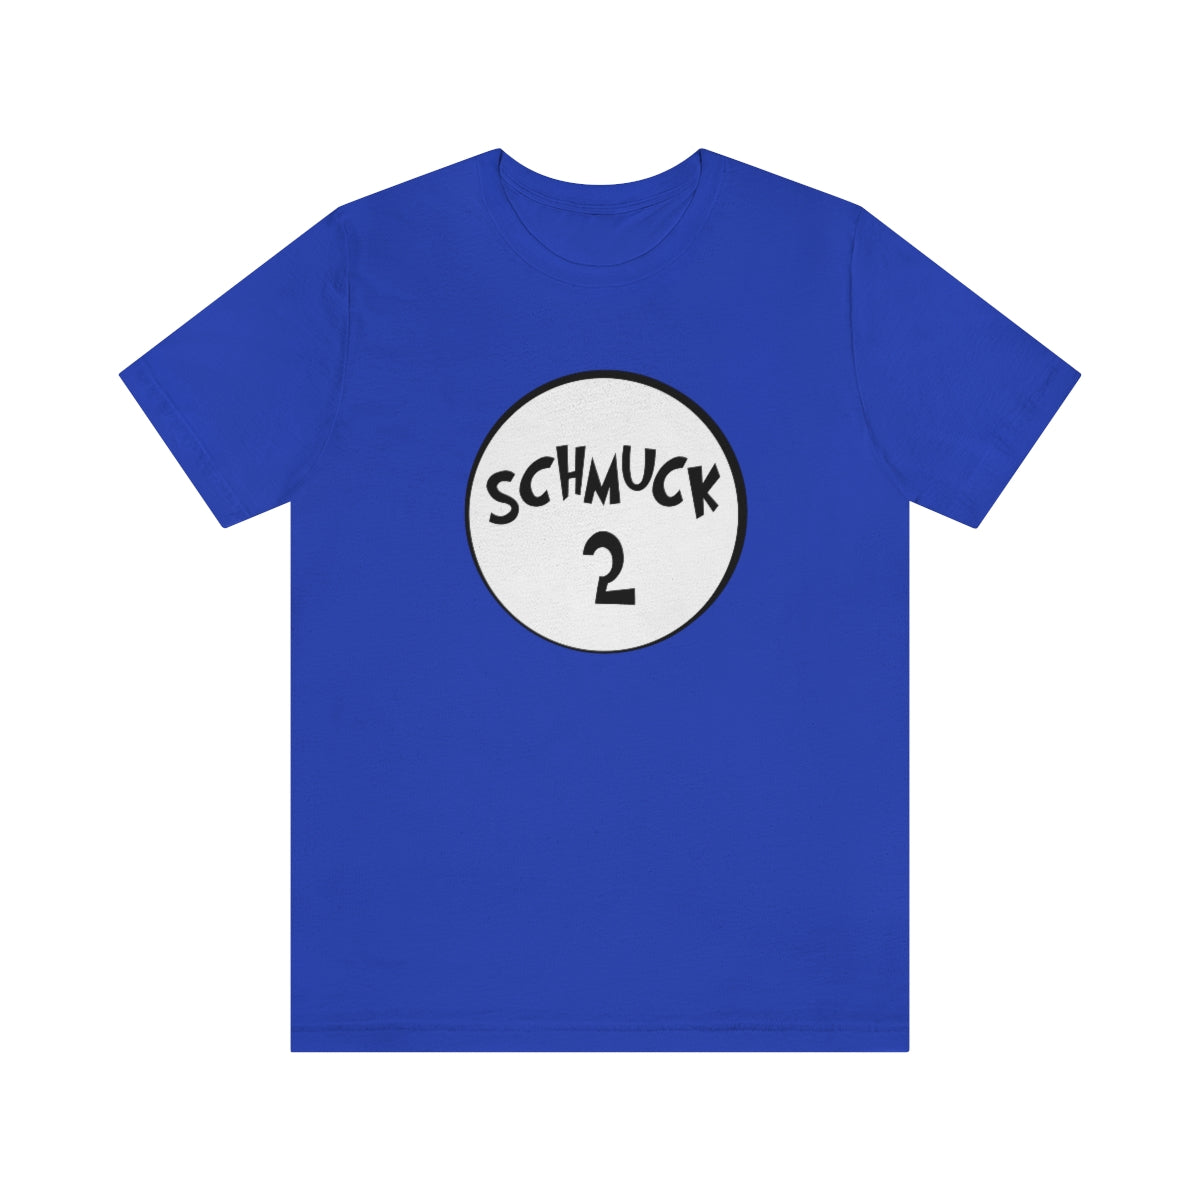 Schmuck 2 T-Shirt